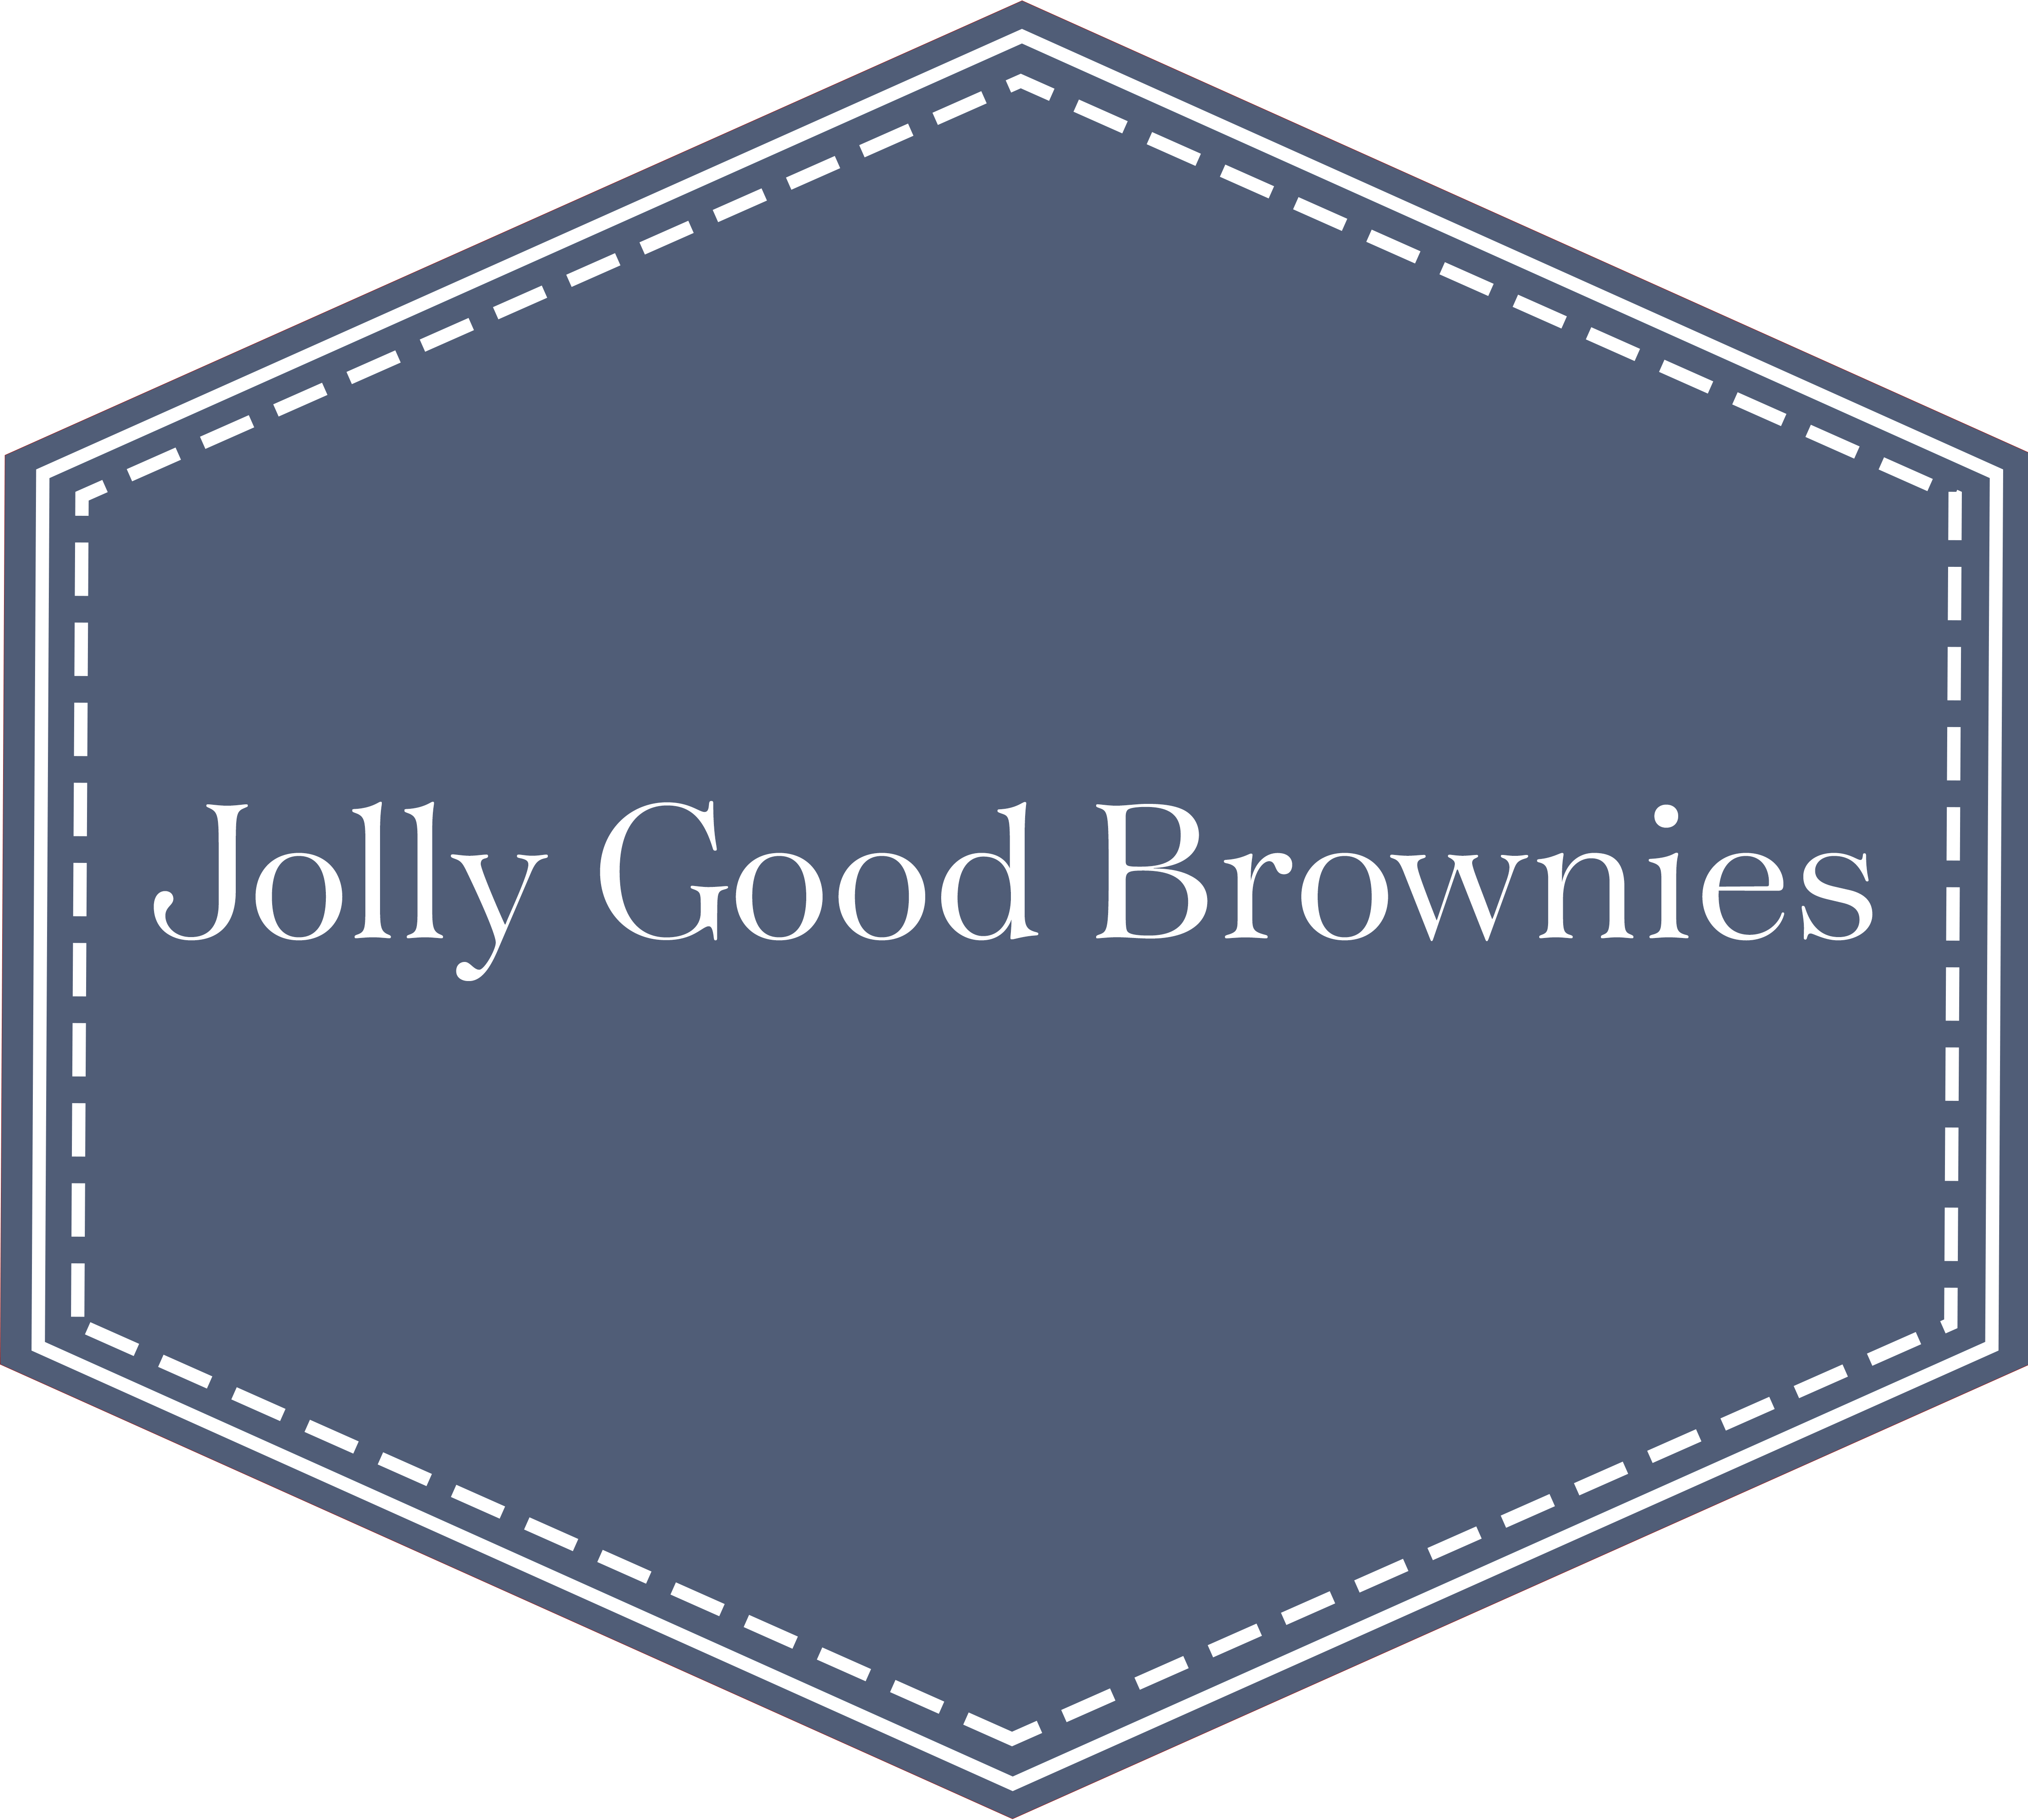 Jolly Good Brownies